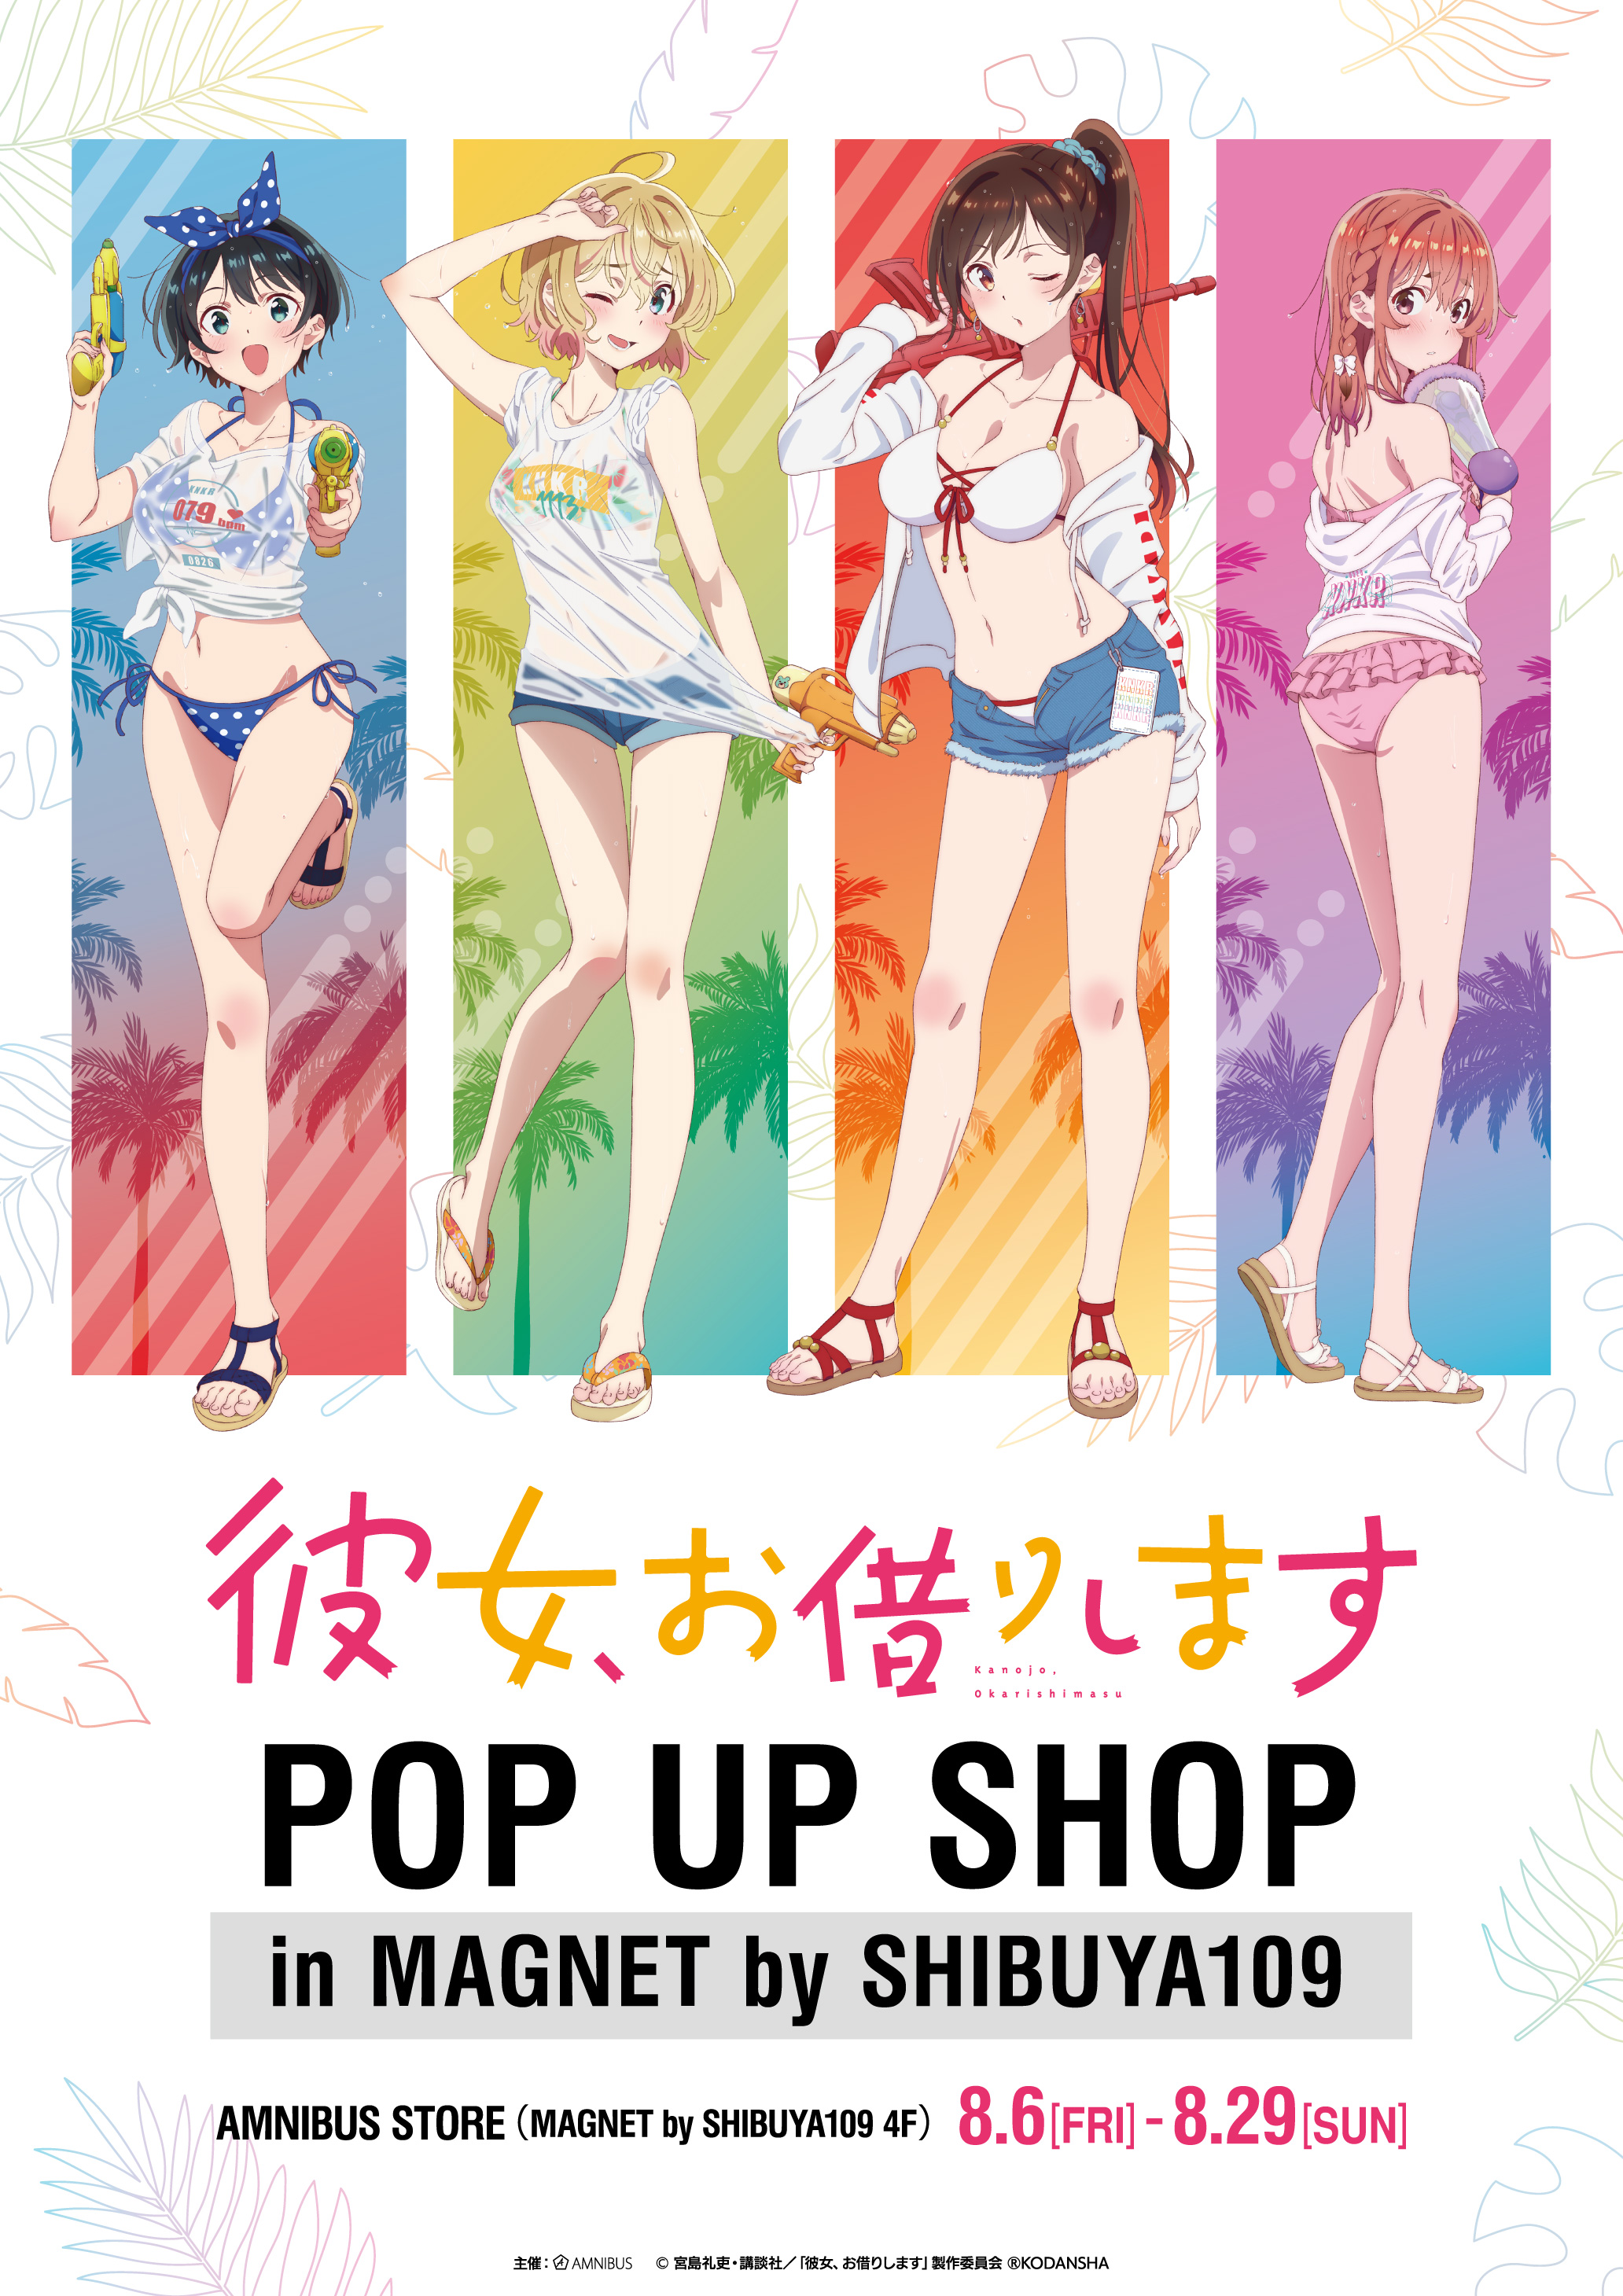 彼女 お借りします Pop Up Shop In Amnibus Store Magnet By Shibuya109 の開催決定 株式会社arma Biancaのプレスリリース